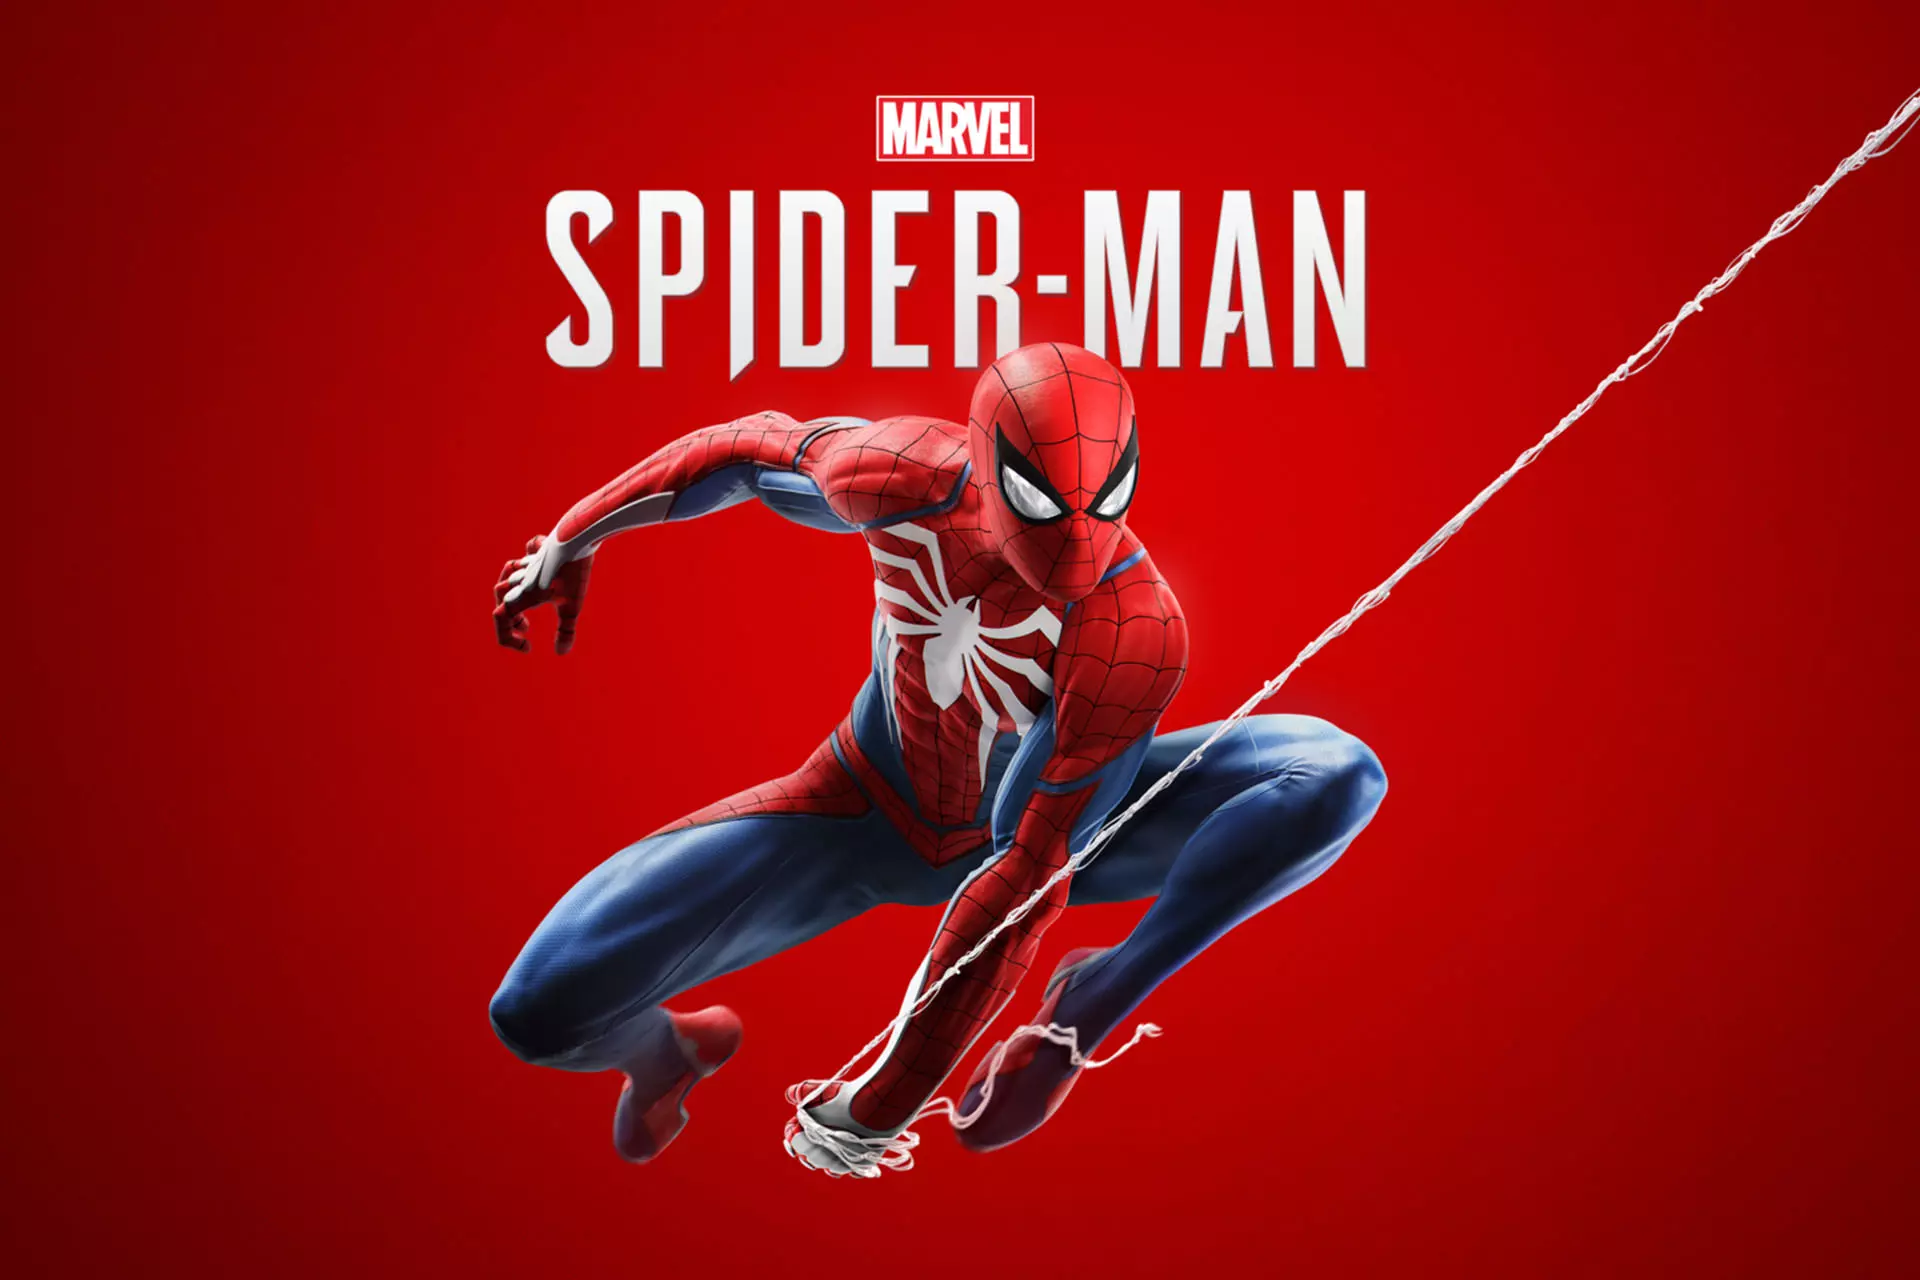 نگاهی به اطلاعات بازی Spider-Man؛ مرد عنکبوتی با طعم اینسامنیاک